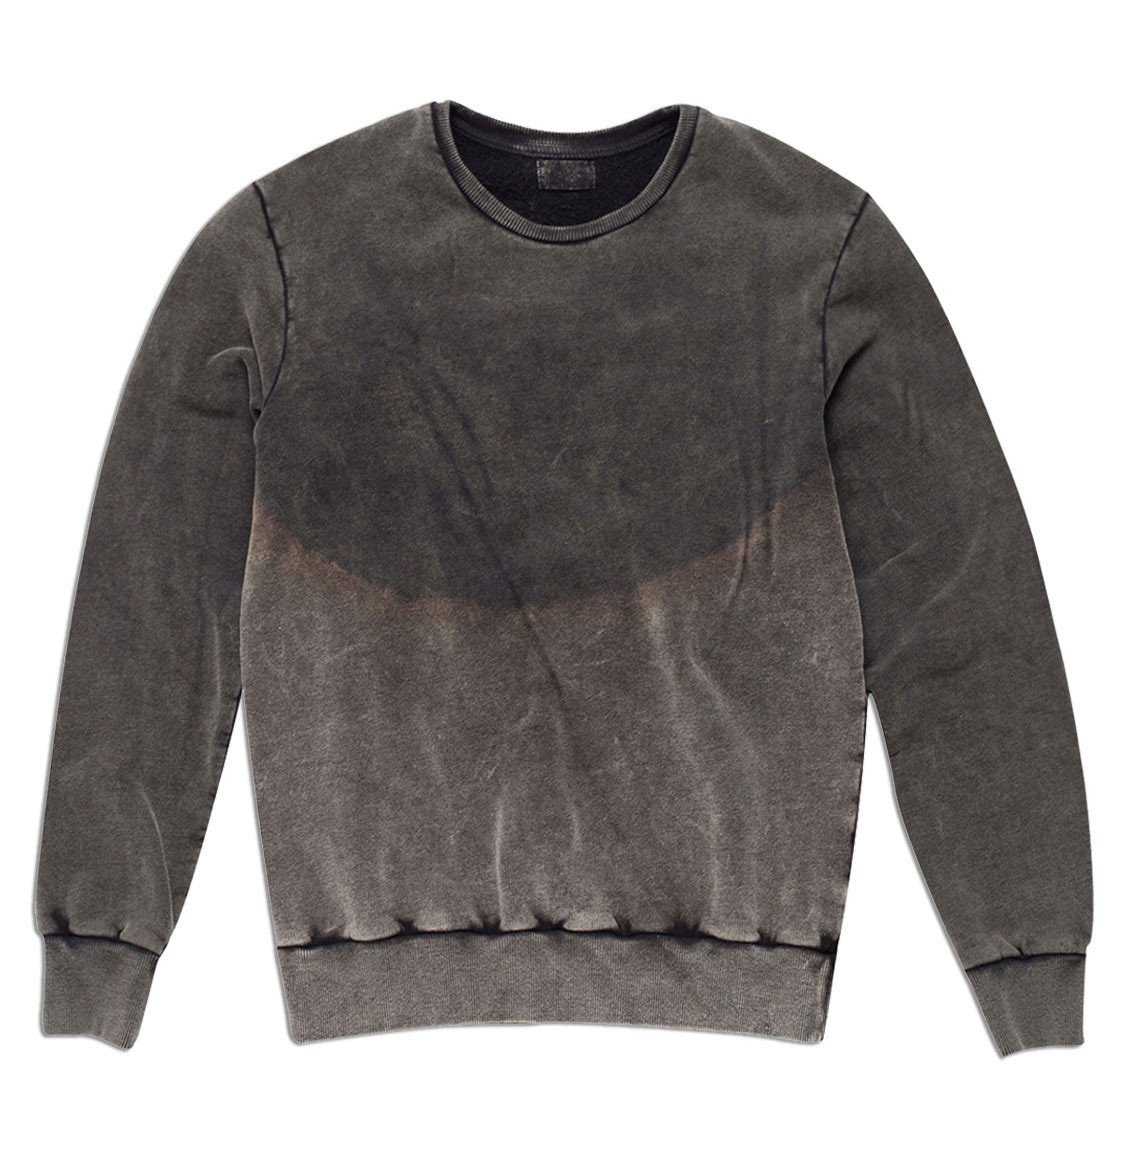 Dirty Dip Dye Cotton Sweatshirt Grey